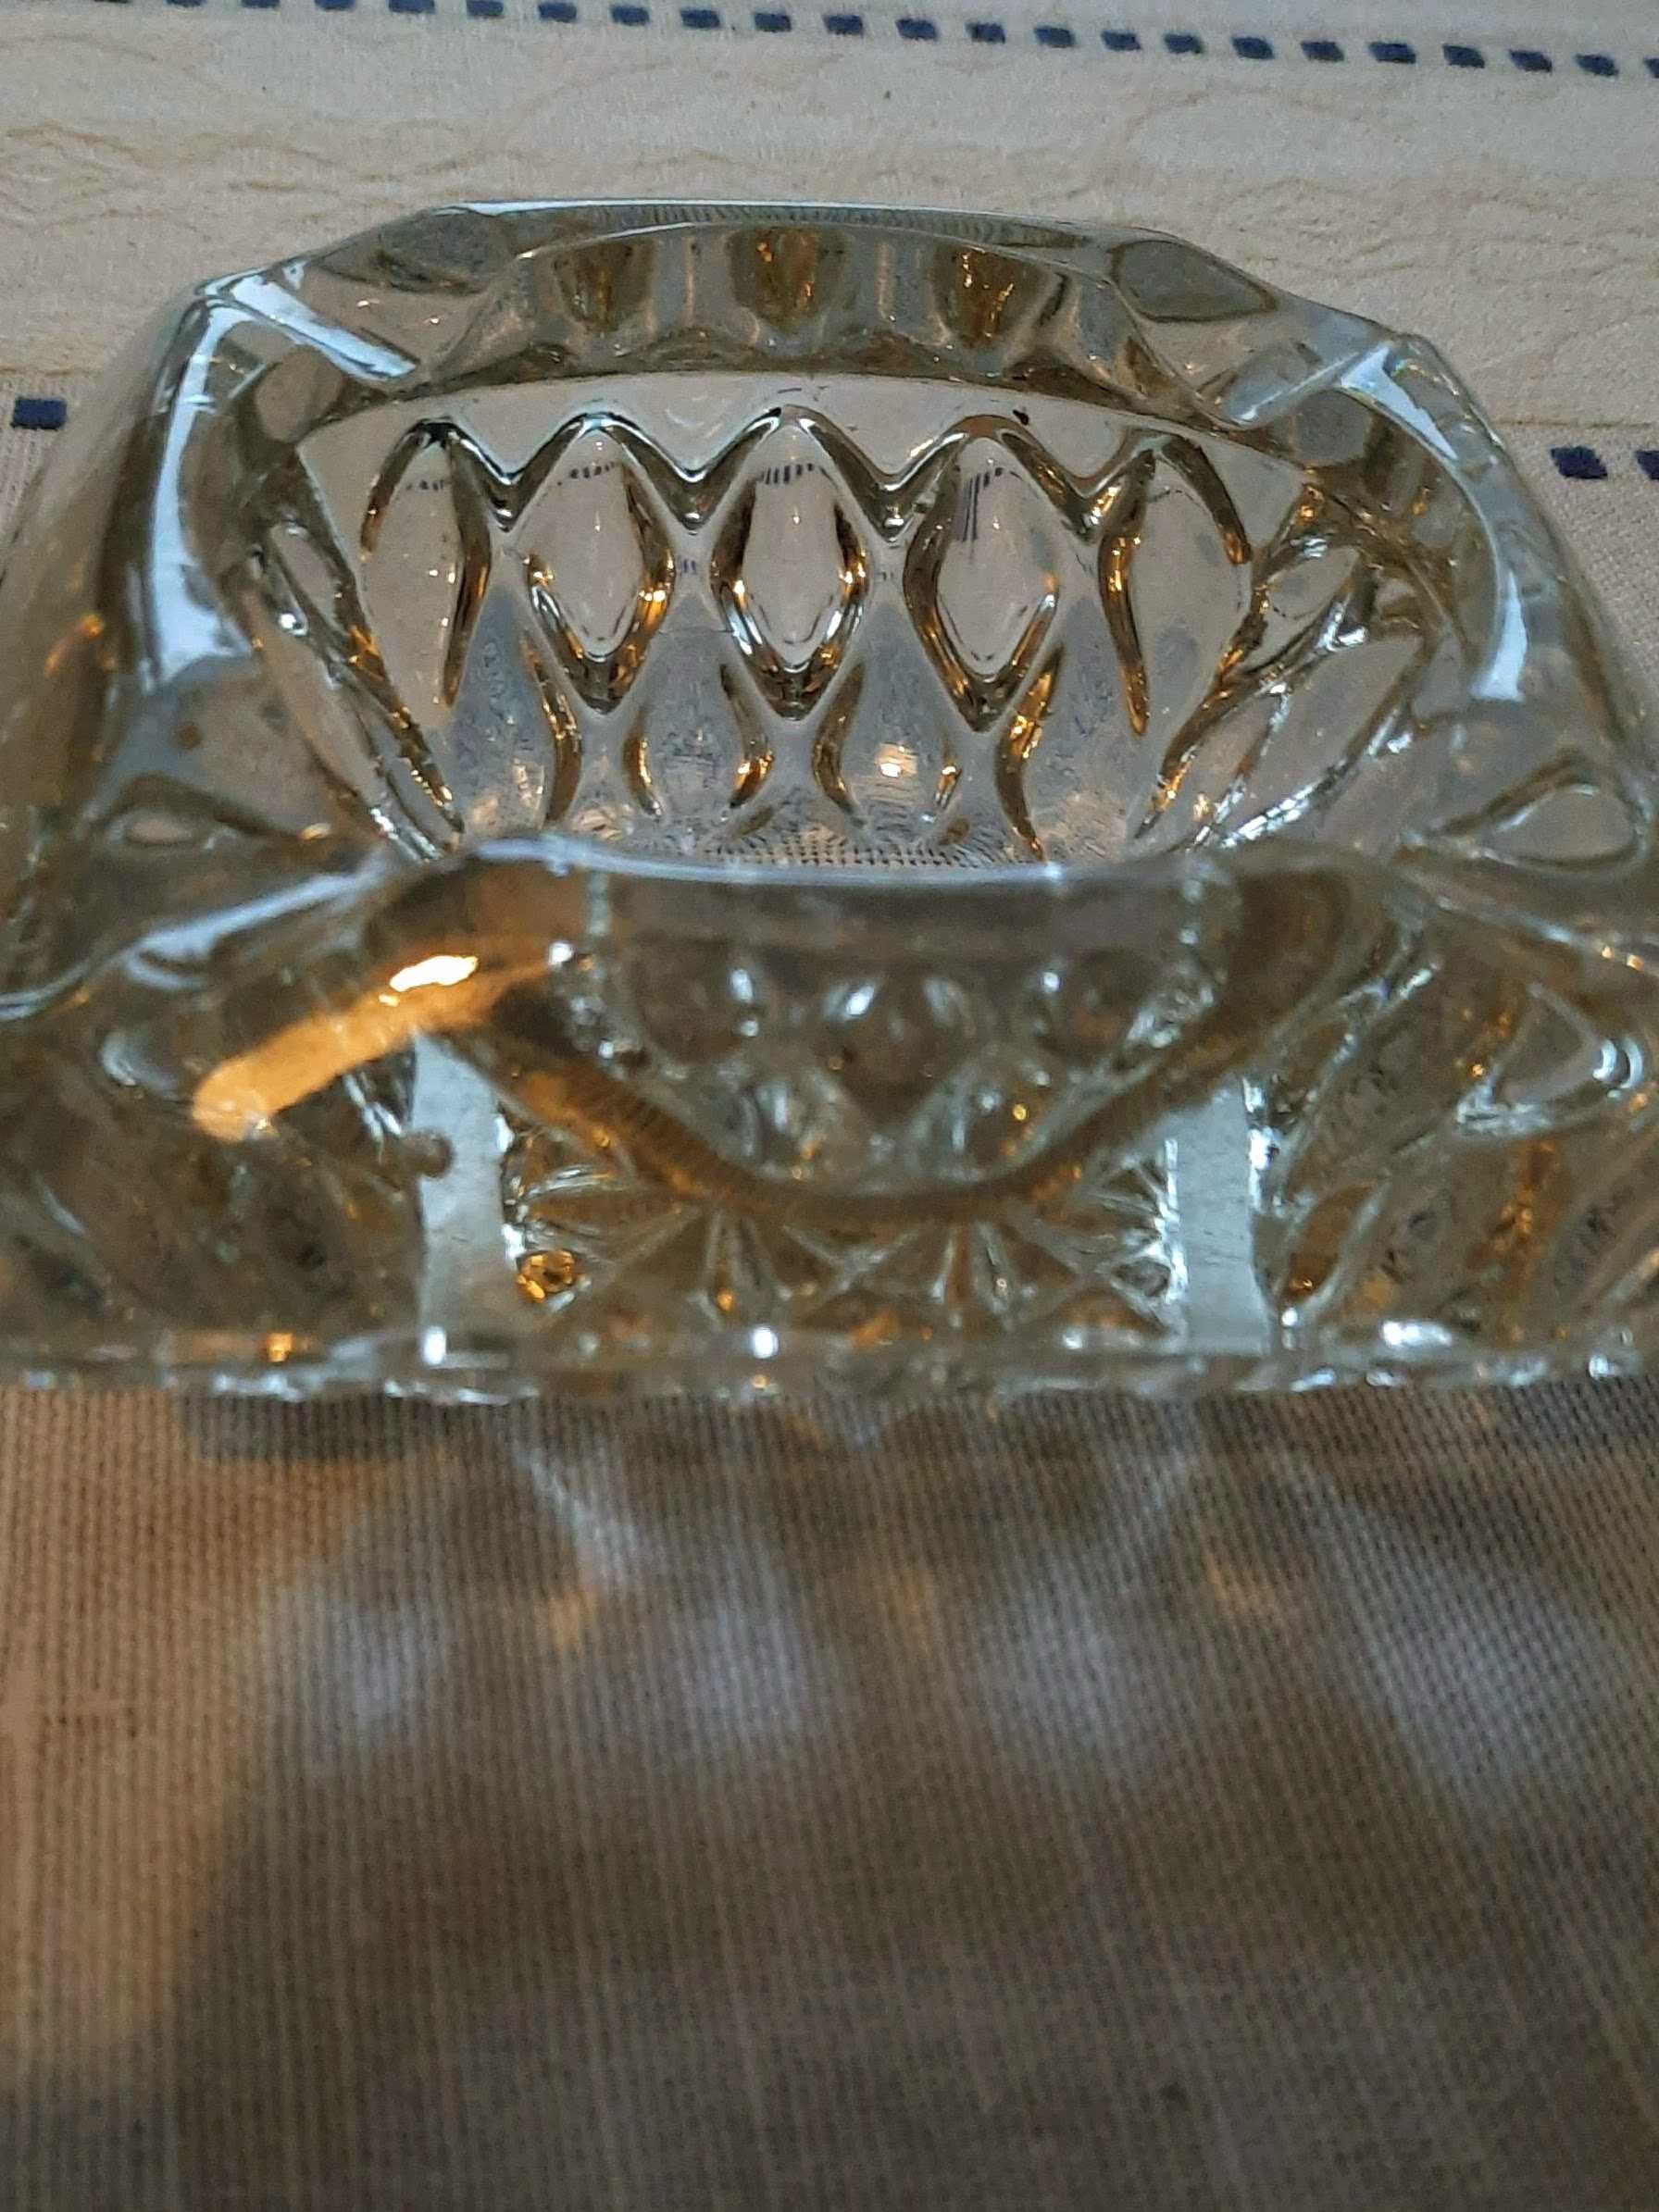 Kryształowa popielniczka z PRL-u wysokość 5,5 cm, 4 boki po 12 cm